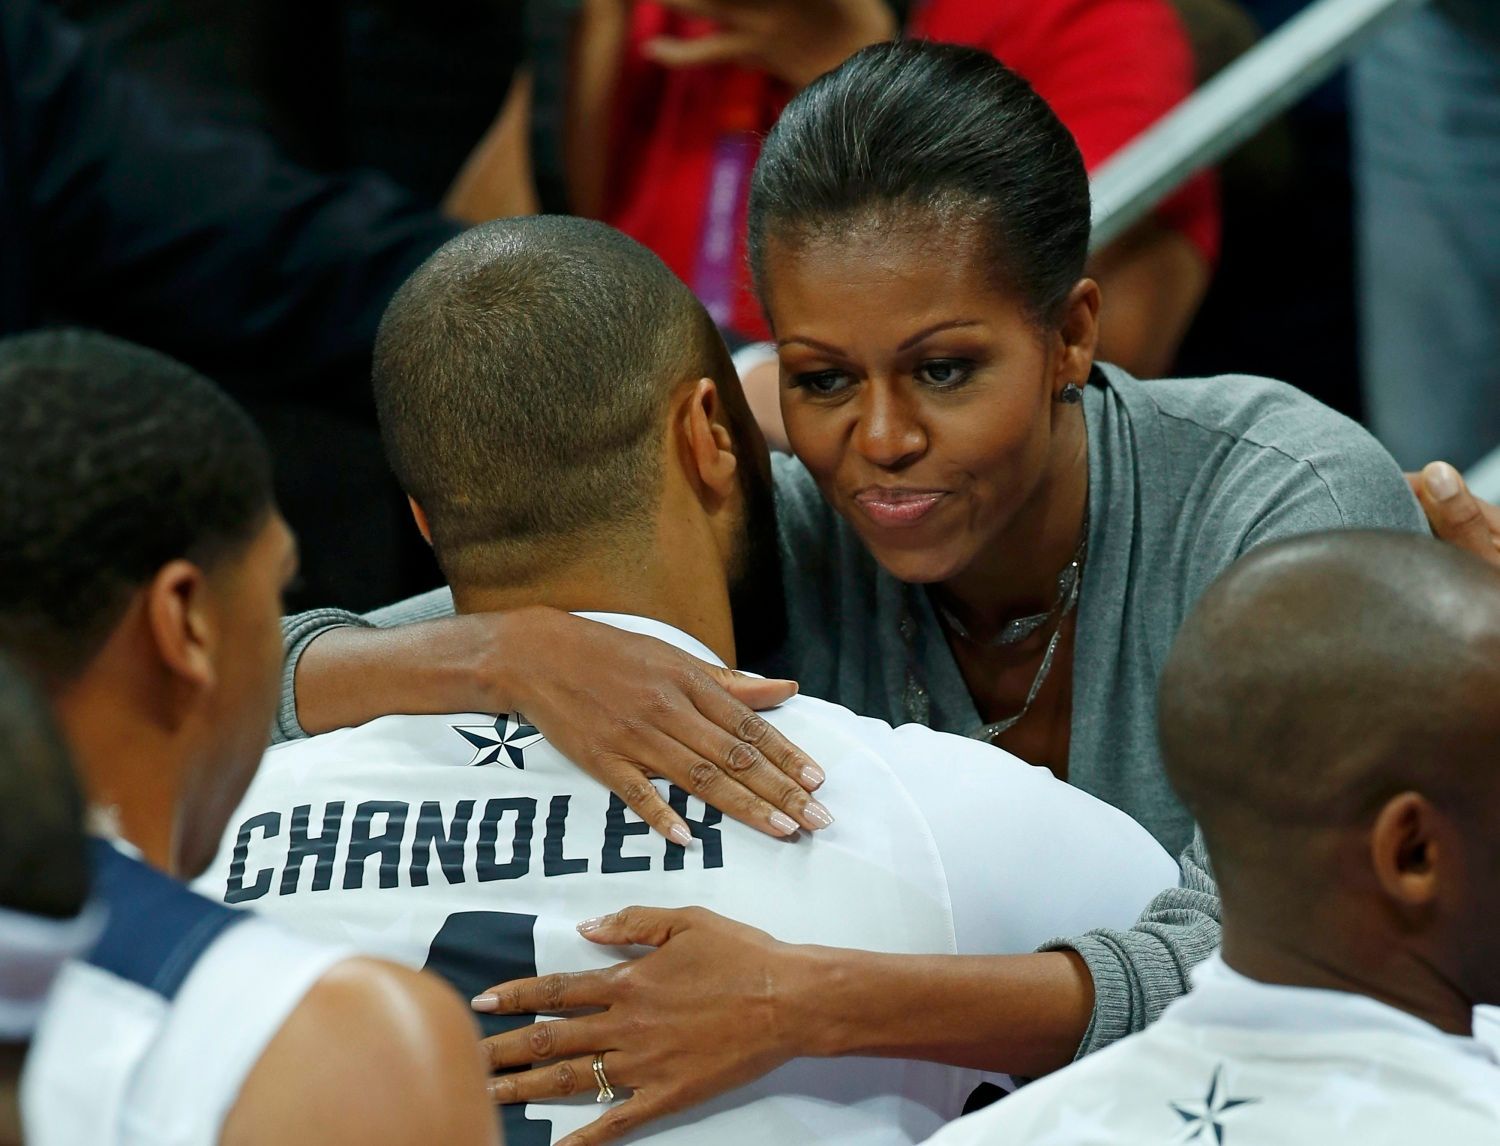 Americká první dáma Michelle Obamová se zdraví s Tysonem Chandlerem z Dream Teamu v utkání základní skupiny A s Francií na OH 2012 v Londýně.